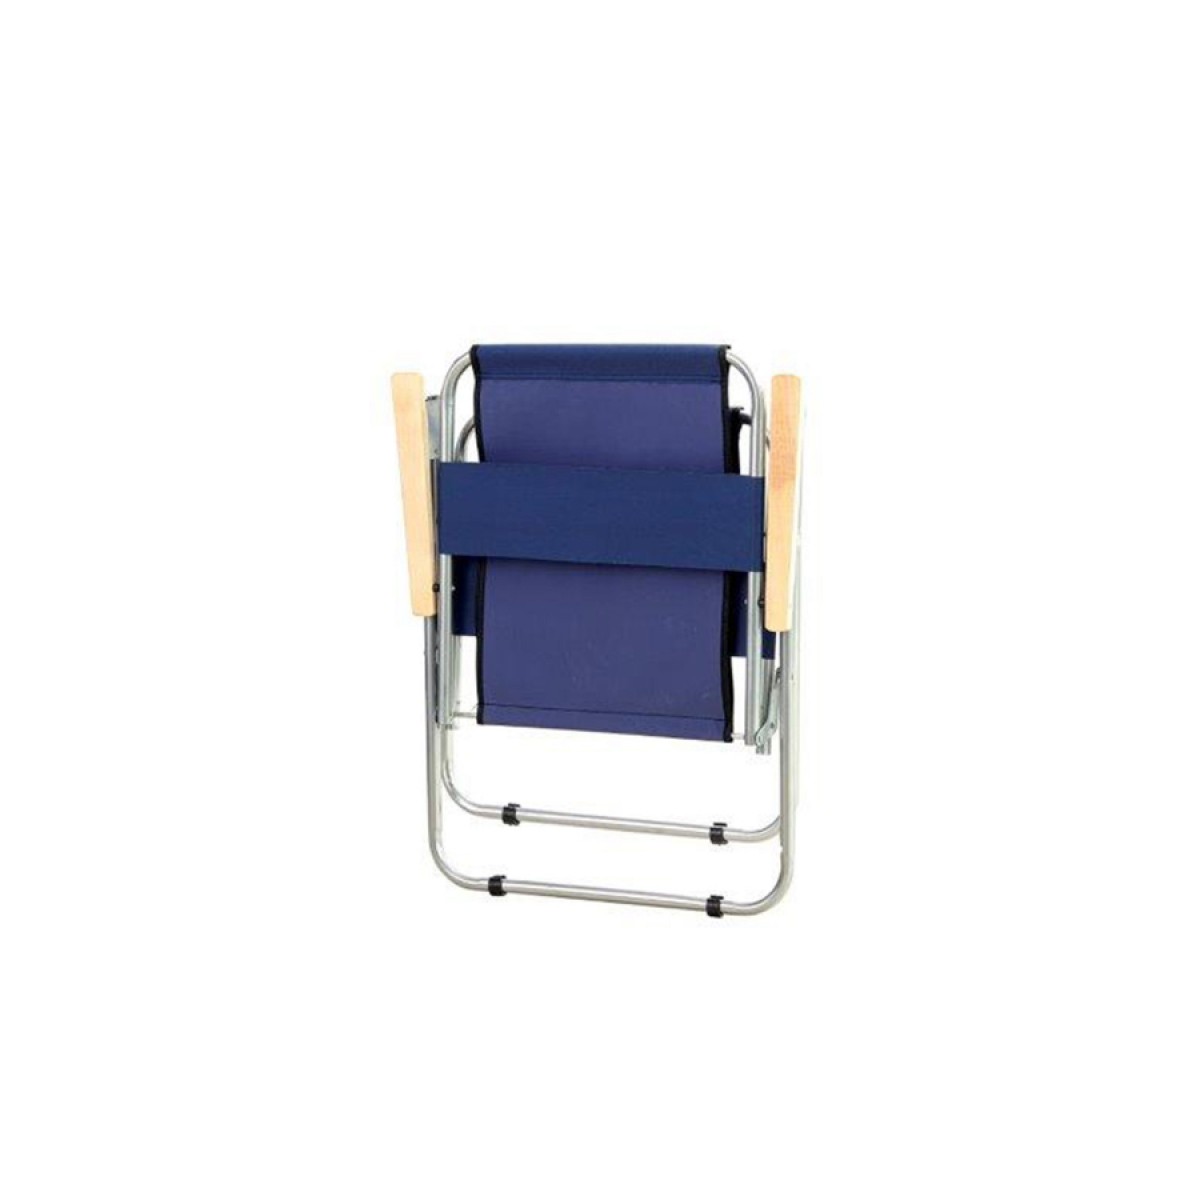 Πολυθρόνα παραλίας πτυσσόμενη από ύφασμα/μέταλλο/ξύλο σε μπλε/ασημί χρώμα 55x50x78